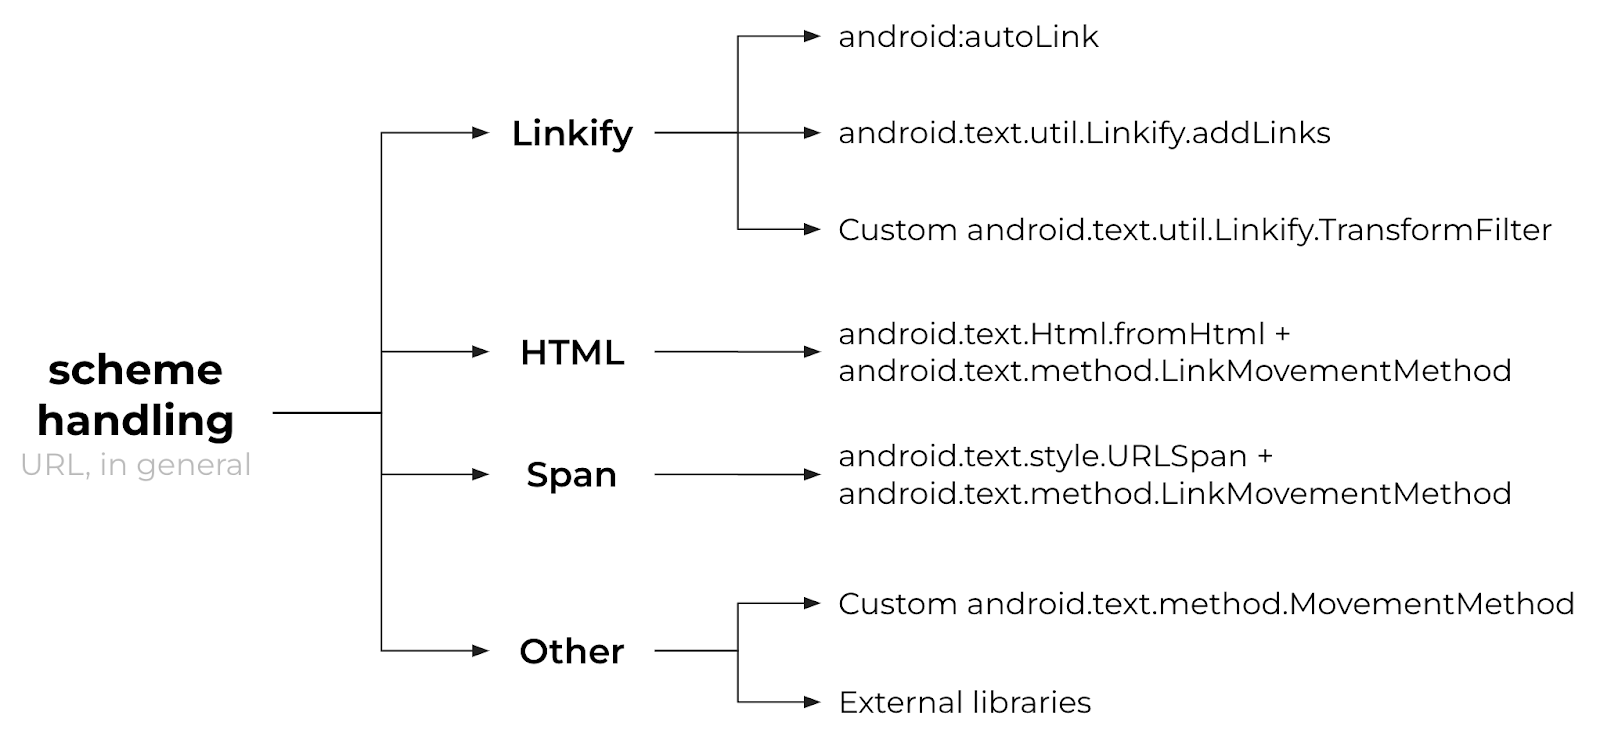 Способы обработки scheme и URL.
